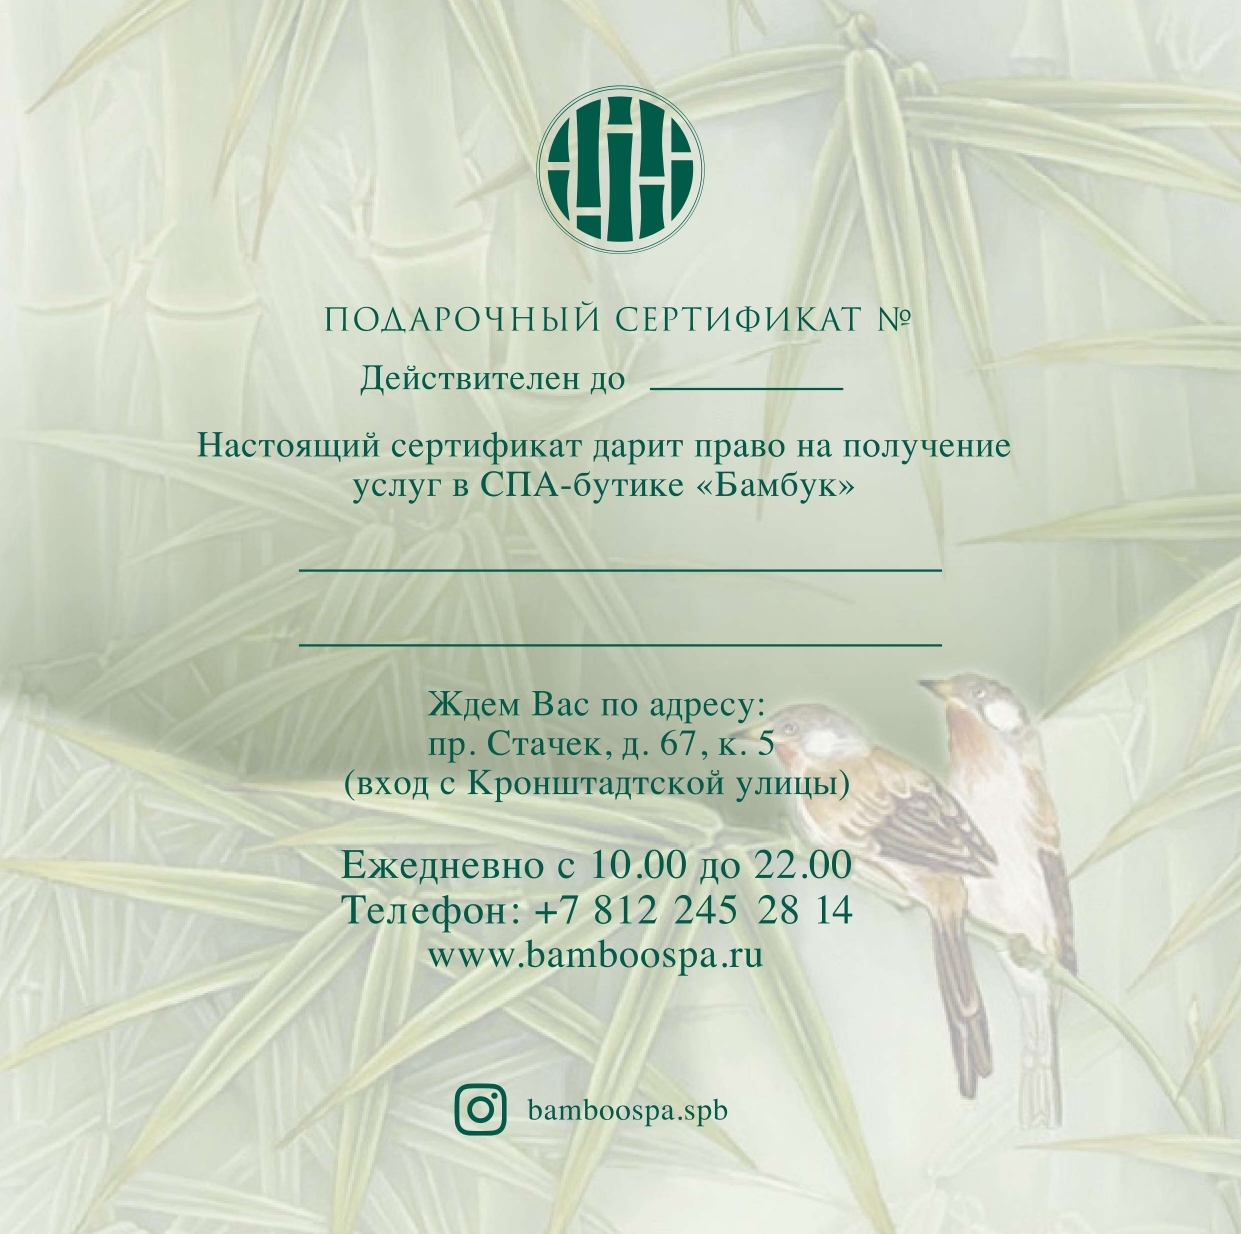 Подарочные сертификаты для мужчин на массаж и СПА процедуры в Москве - салон ЛАКШМИ